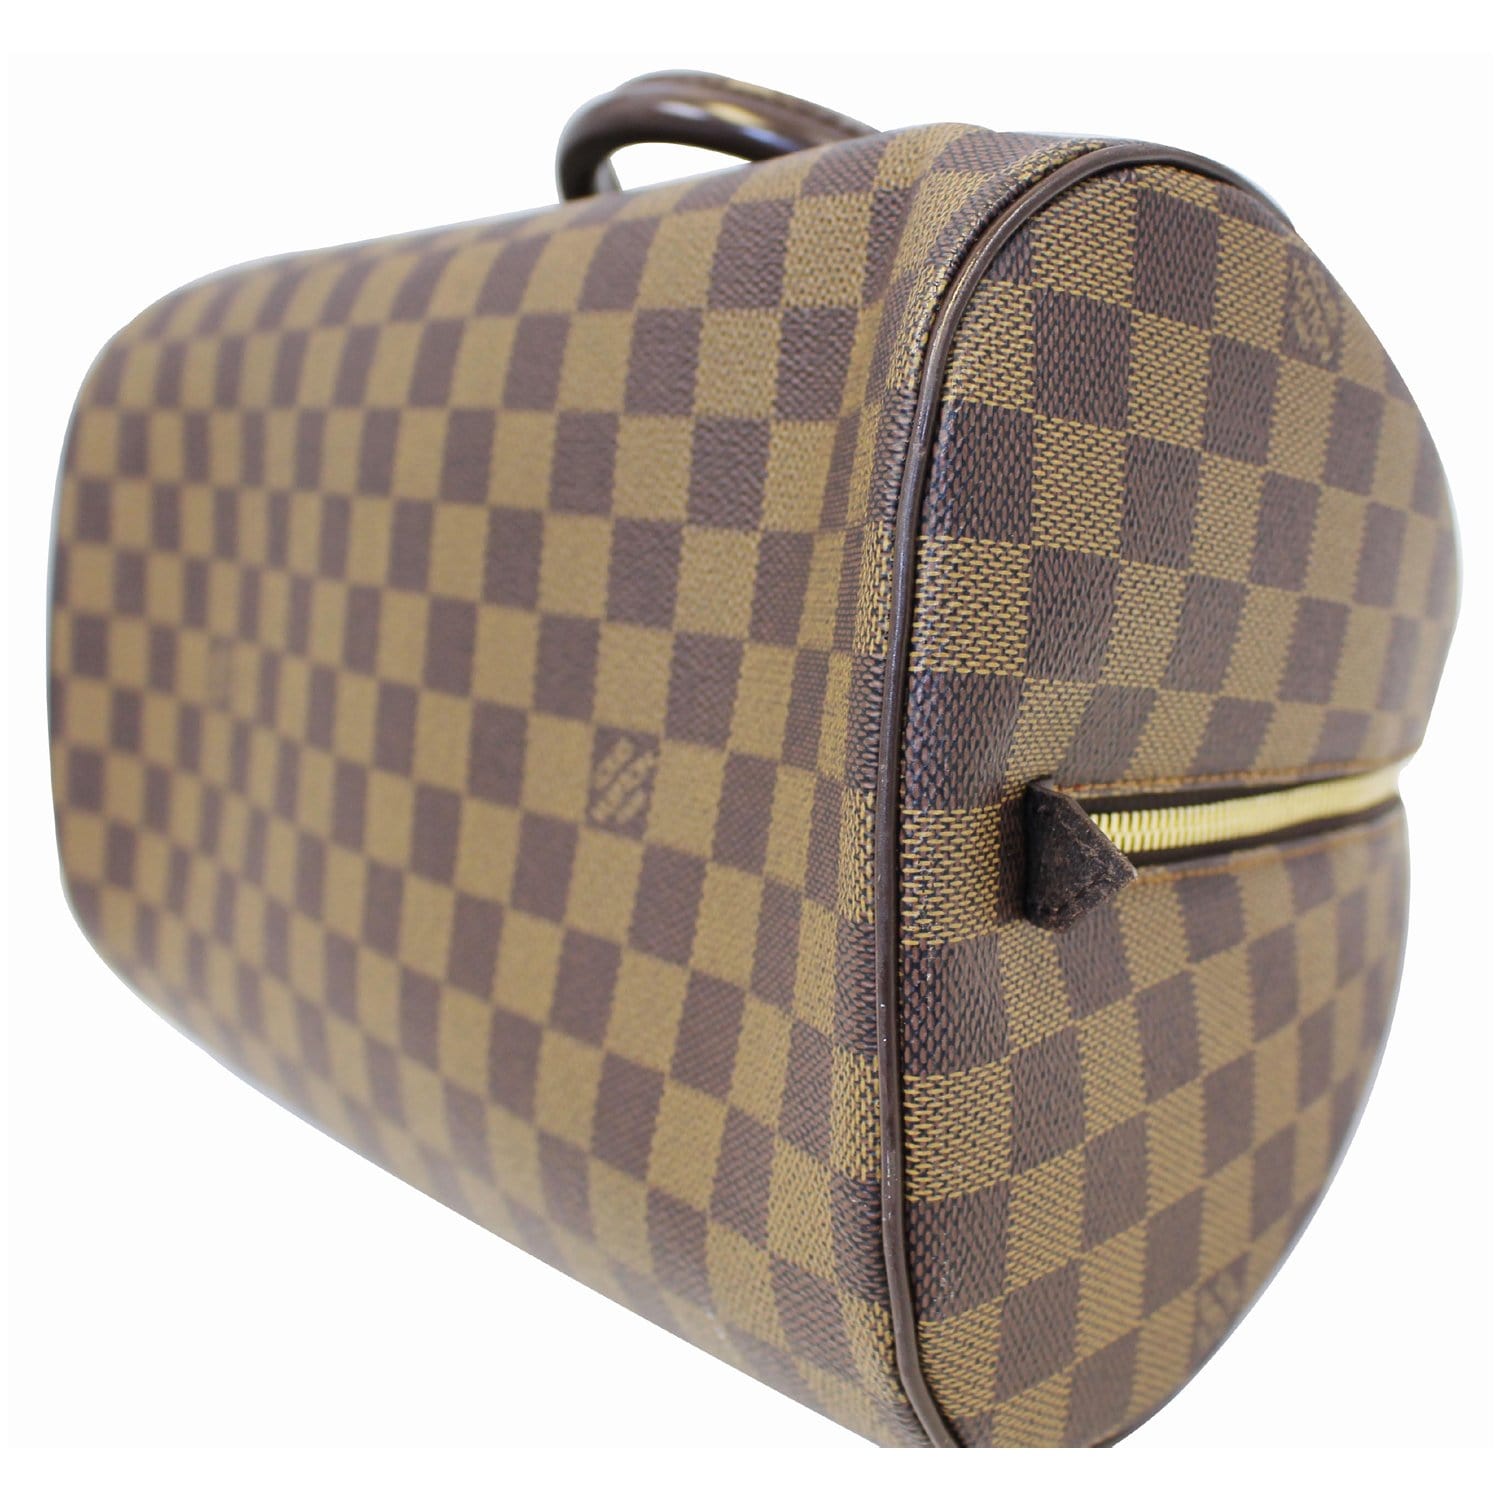 Authentic Louis Vuitton Bags Art Department MM Brown Handbag